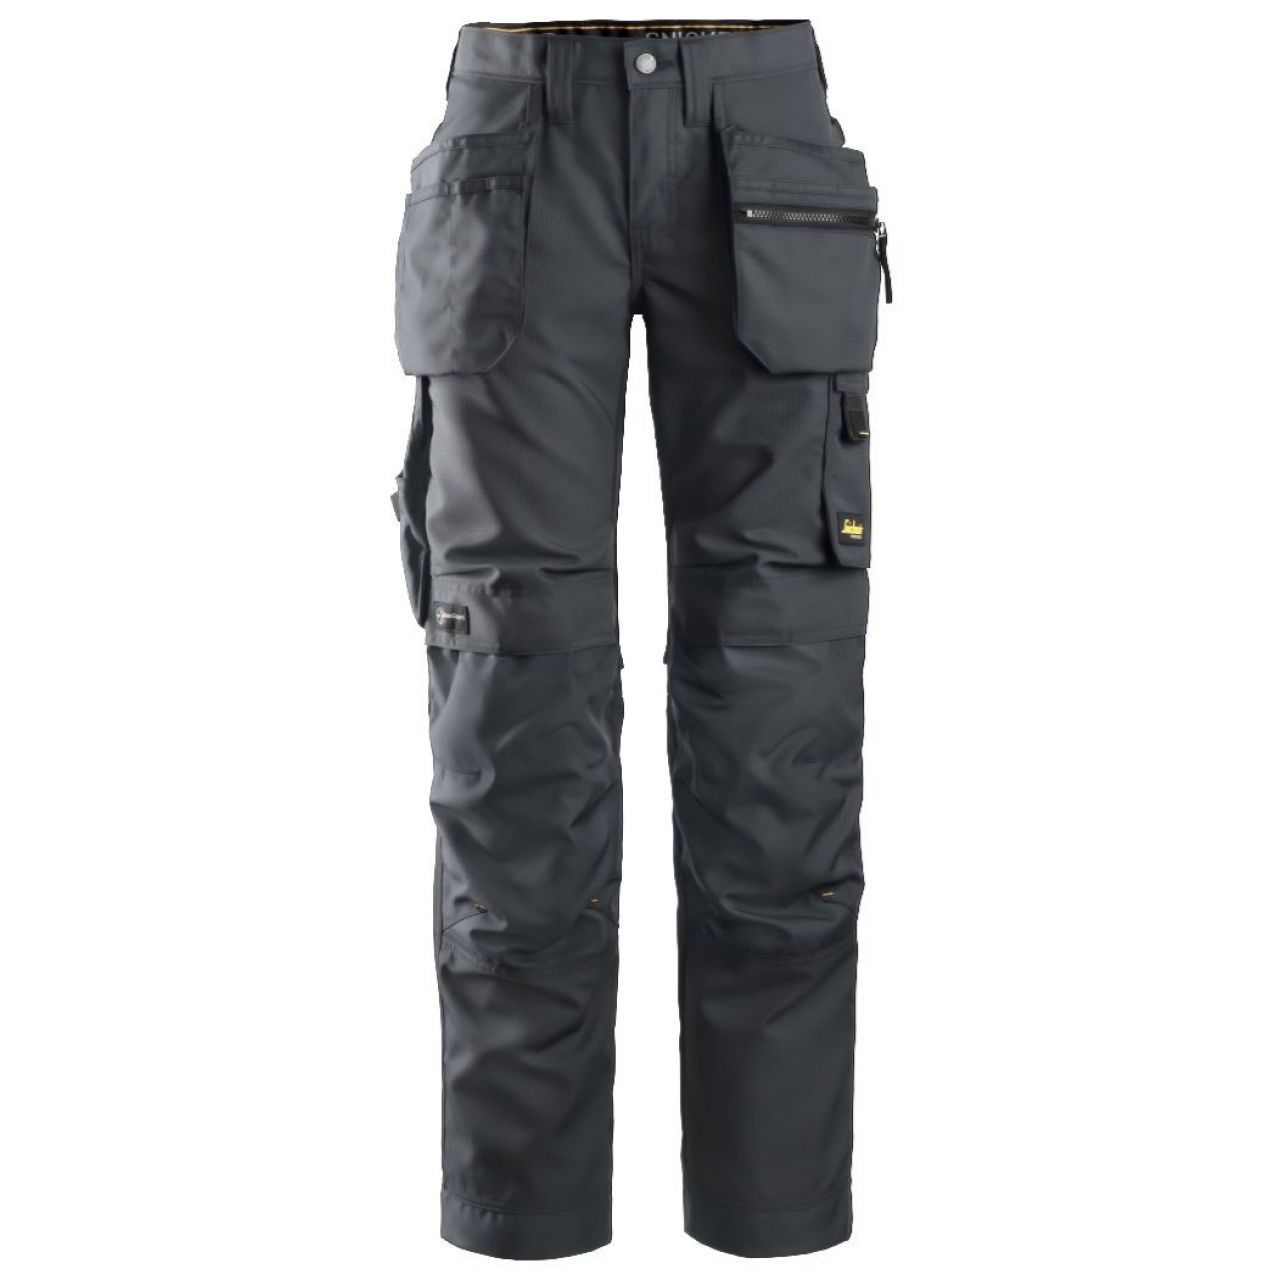 Pantalon de mujer AllroundWork+ con bolsillos flotantes gris acero-negro talla 040